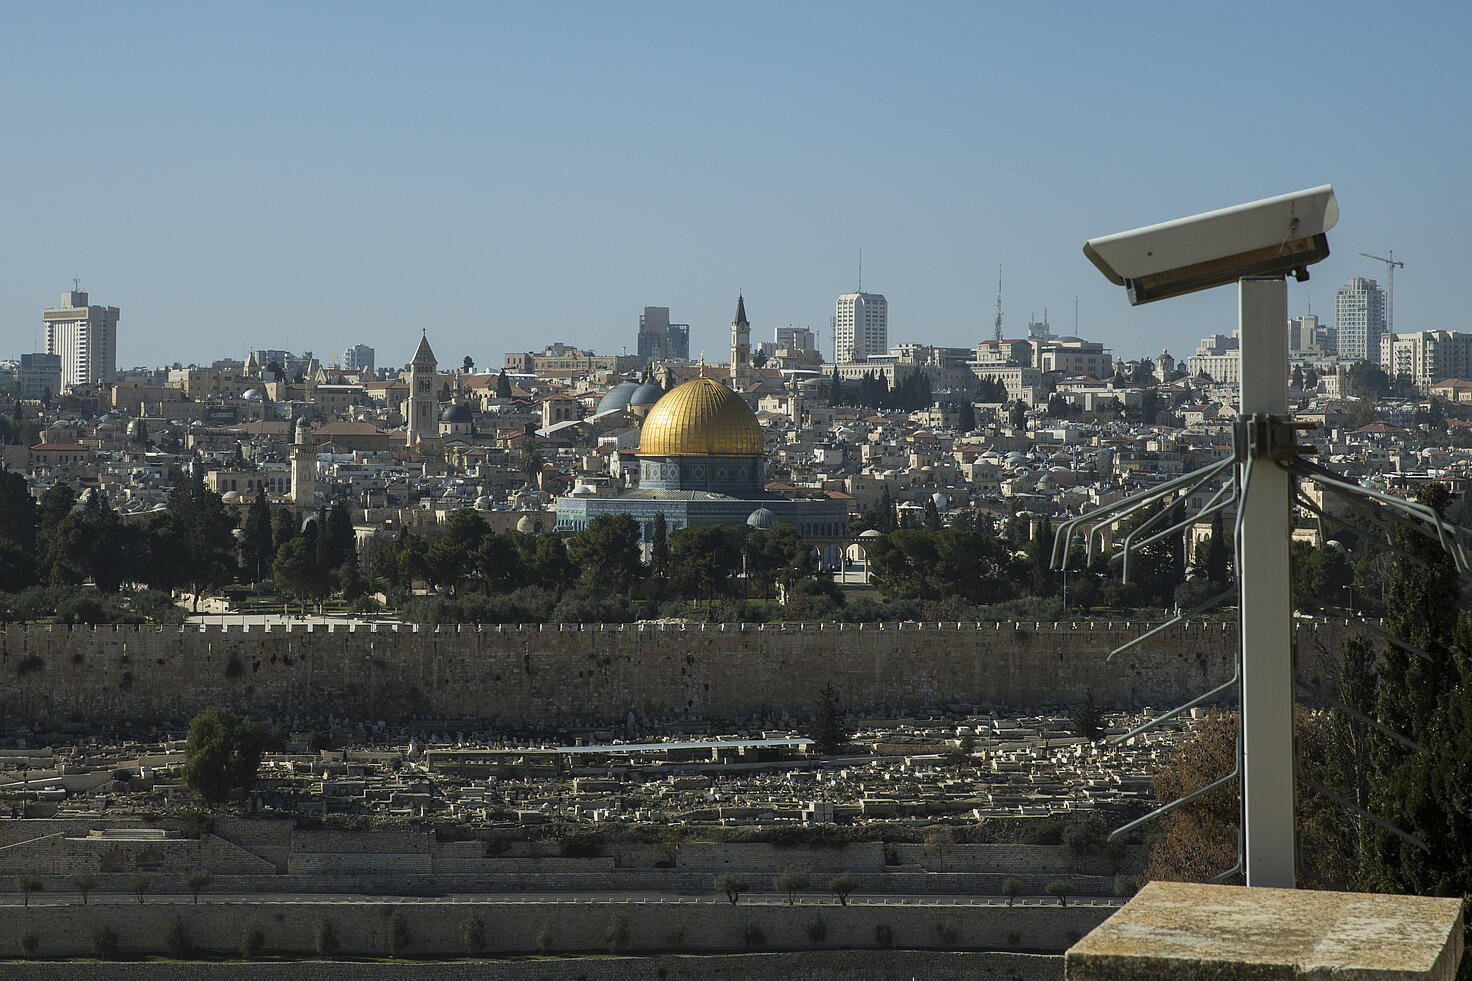 Cámara de seguridad en Israel que se utiliza para afinzar el apartheid contra palestinos